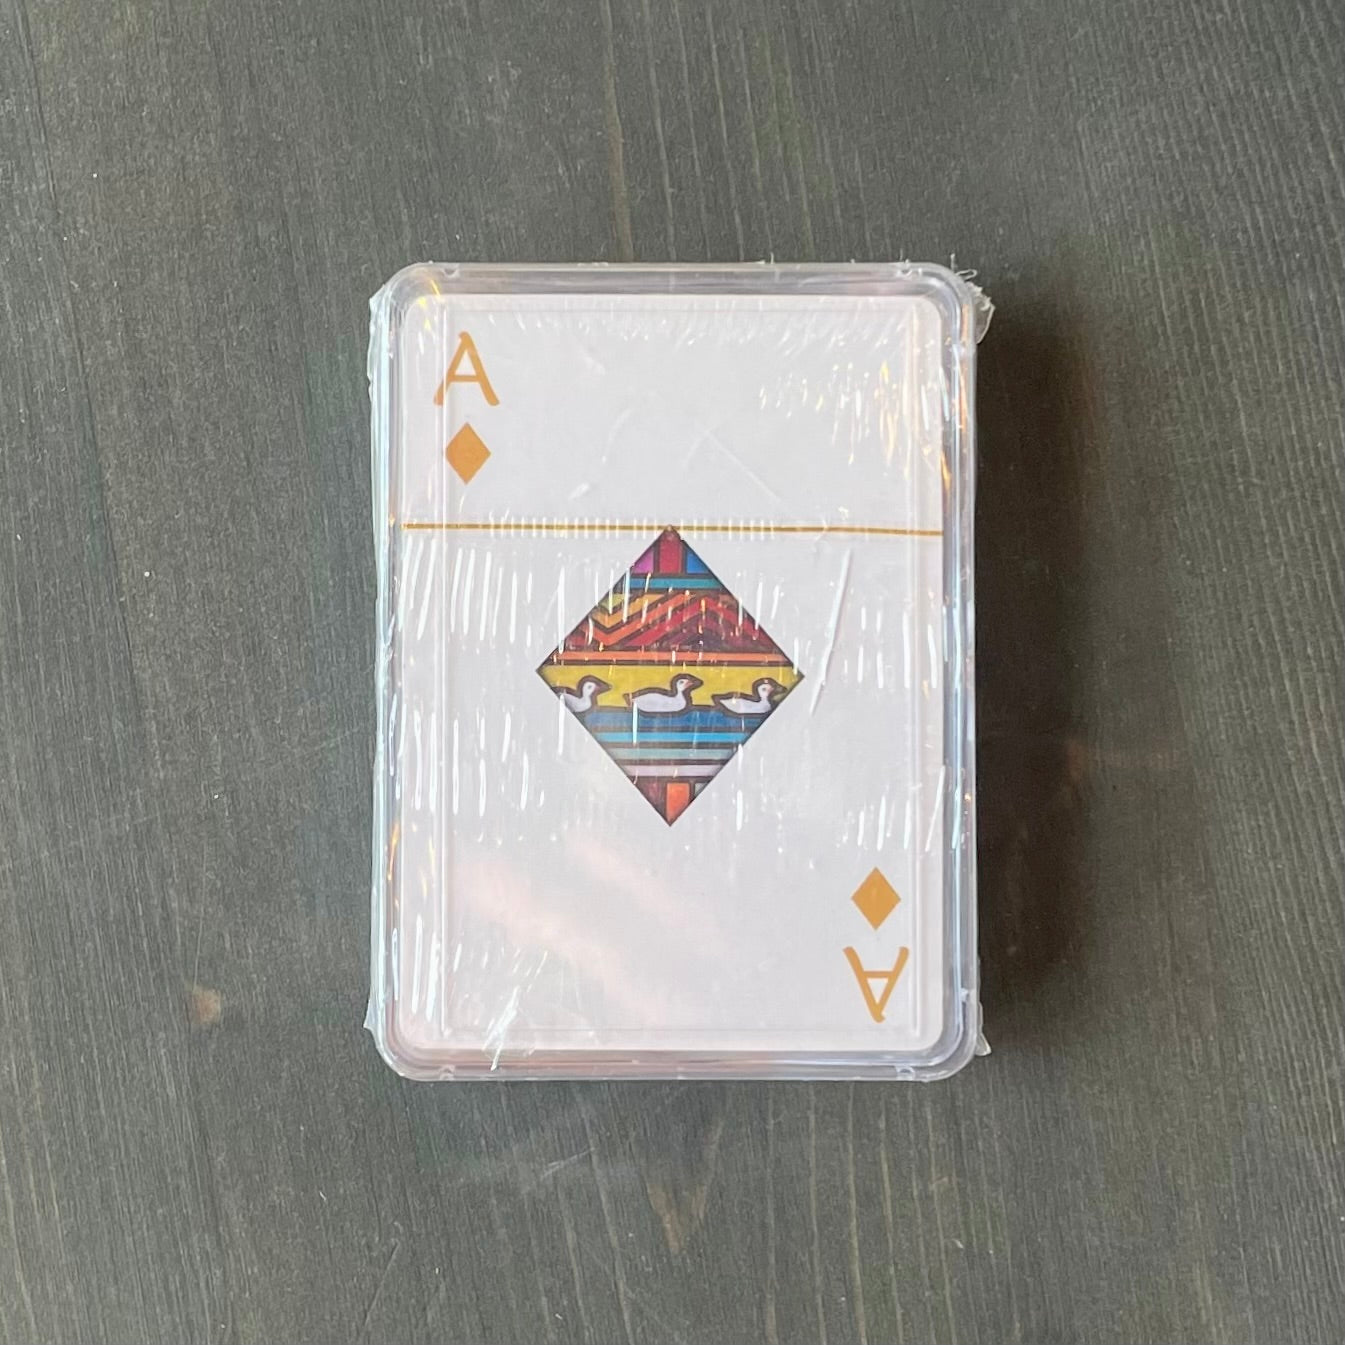 Games - Lake Playing Cards